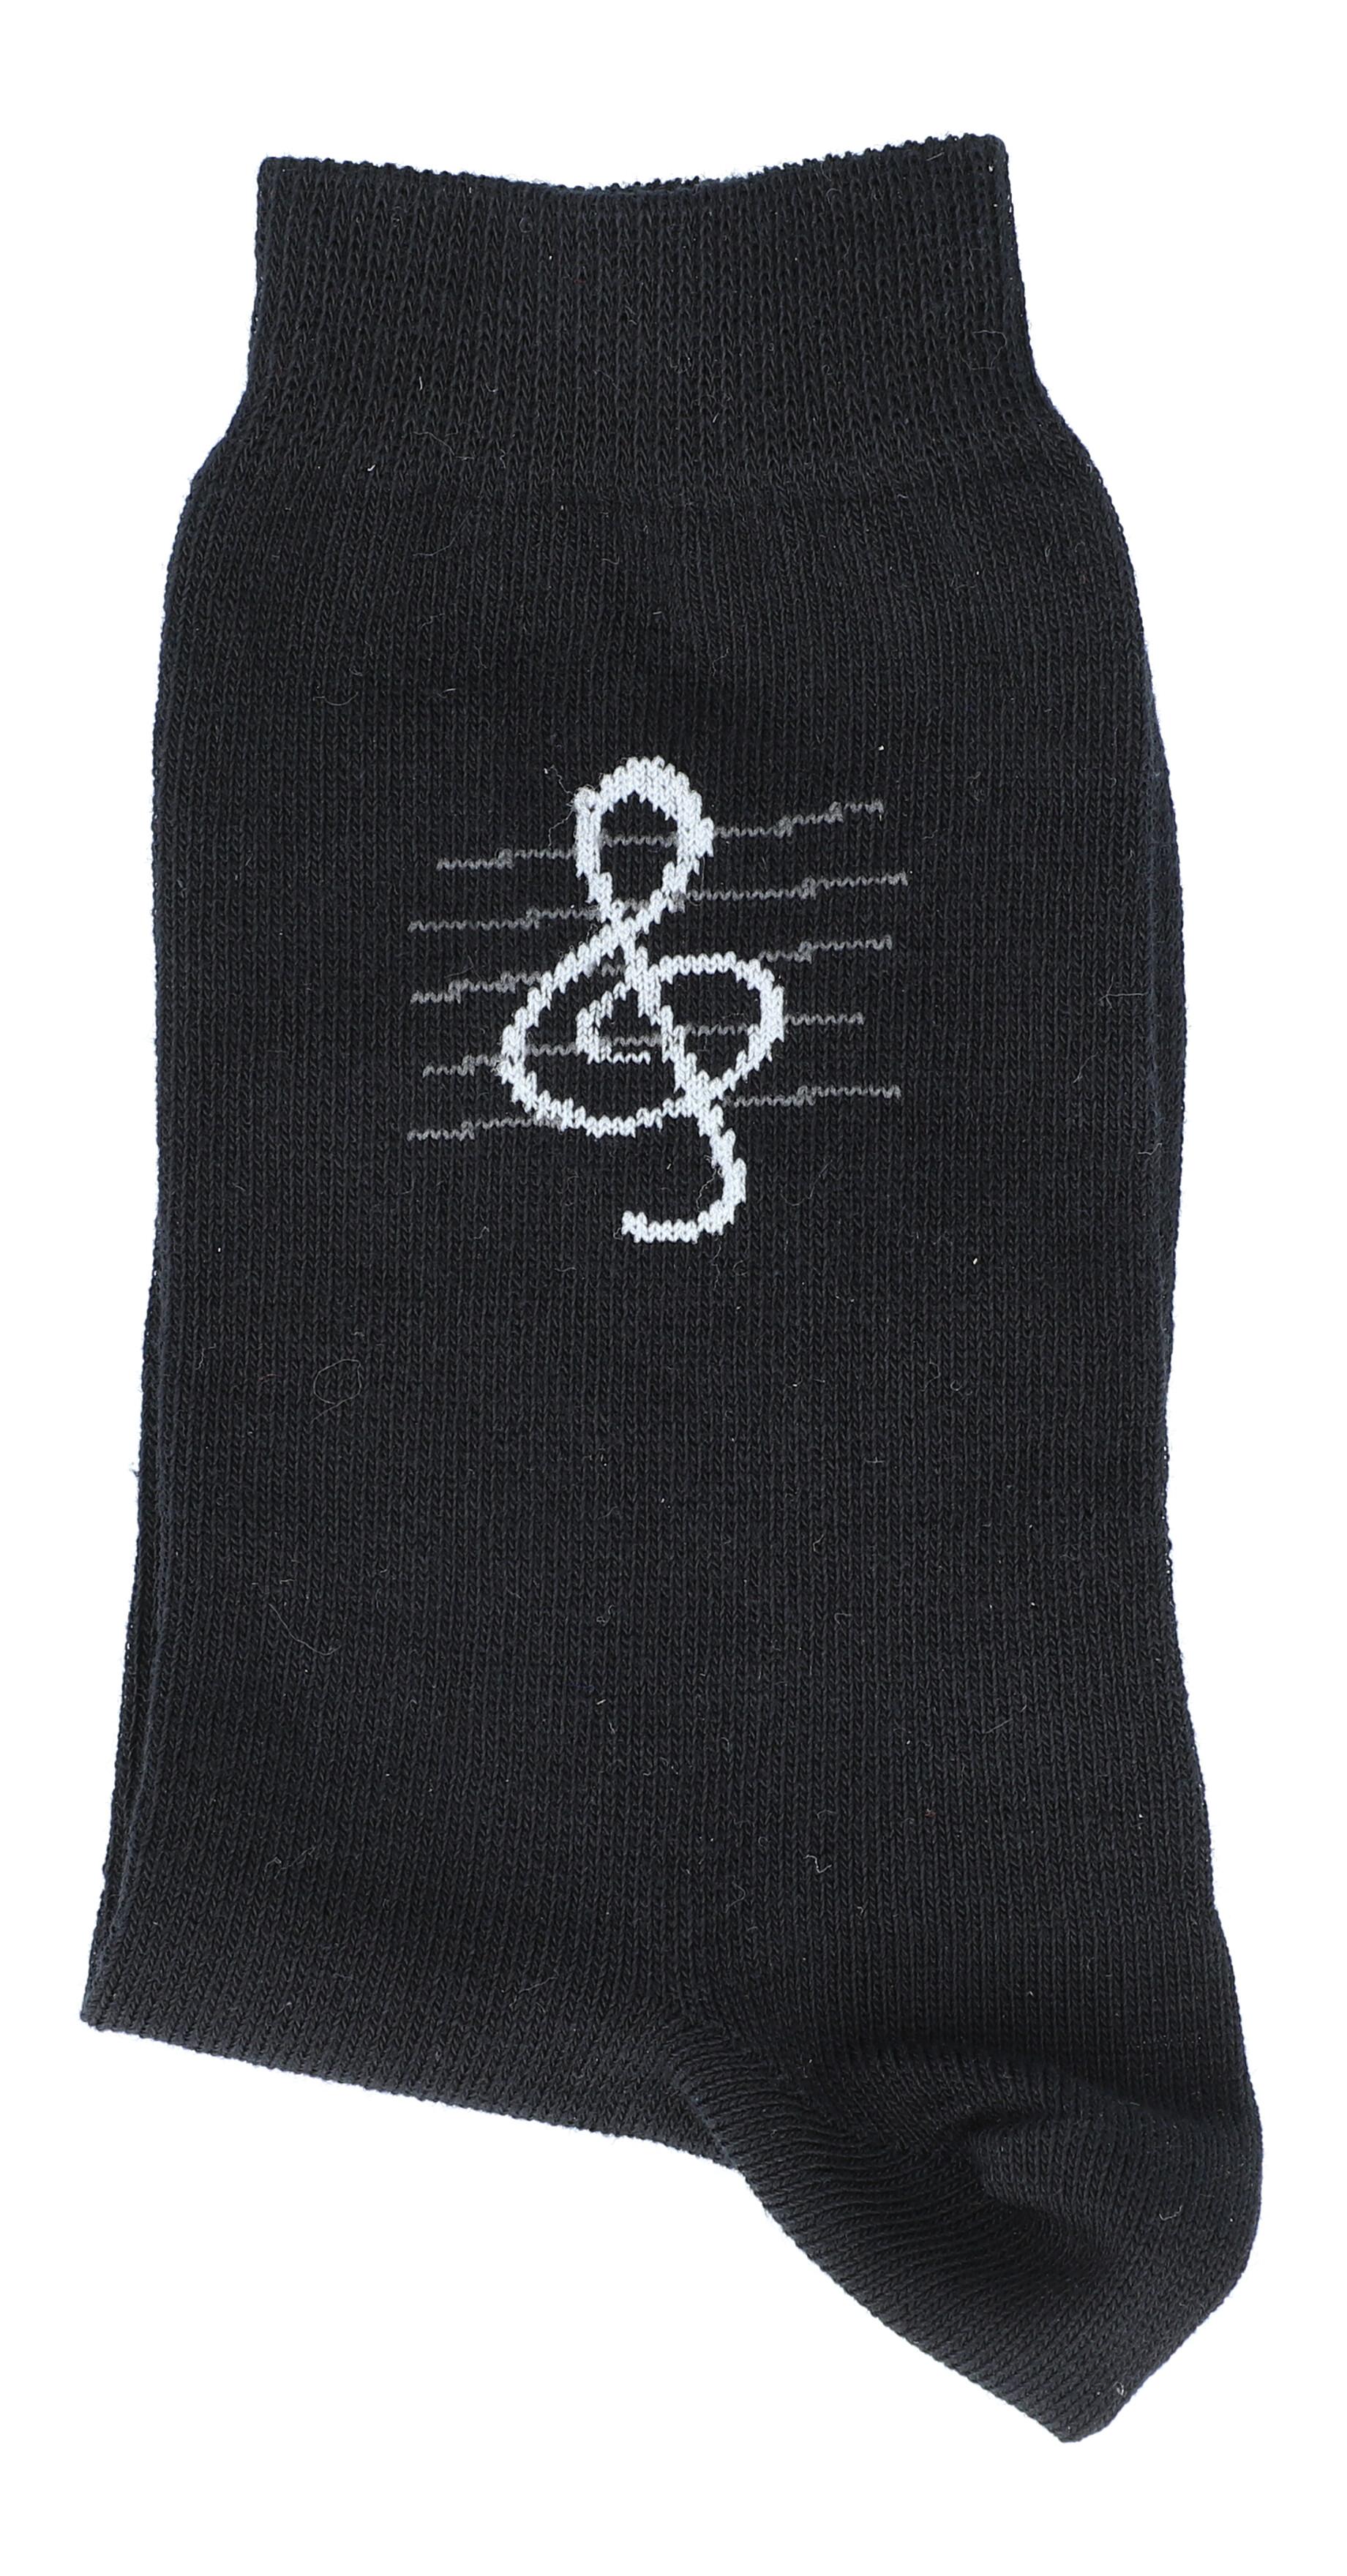 Schwarze Socken mit eingewebtem Violinschlüssel, Musik-Socken, 35-38